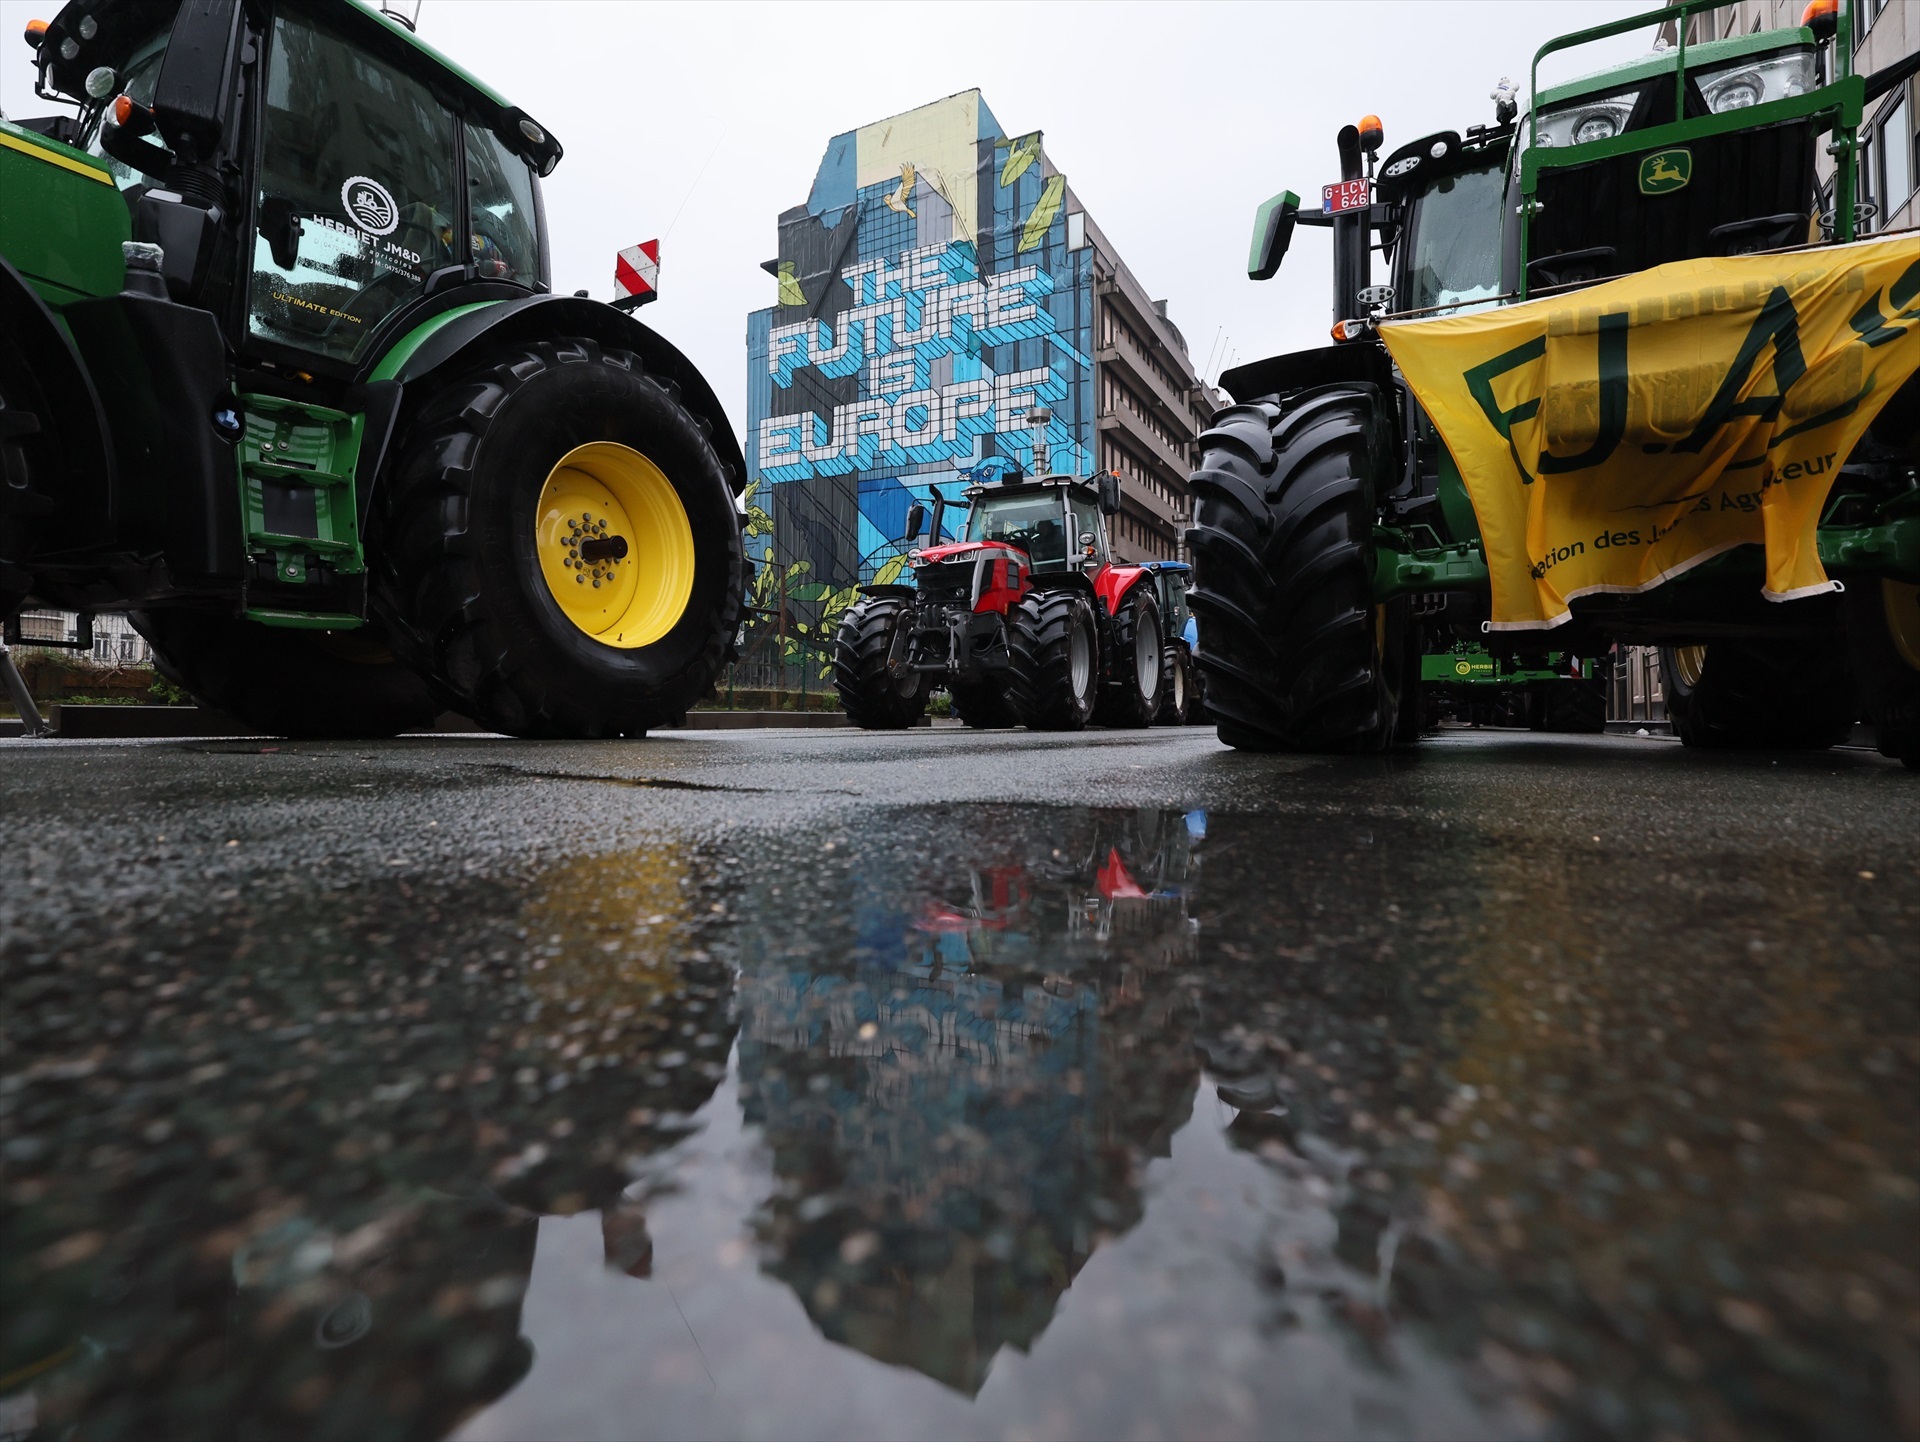 Protesta dels agricultors a Brussel·les, Bèlgica. DPA / Benoit Doppagne